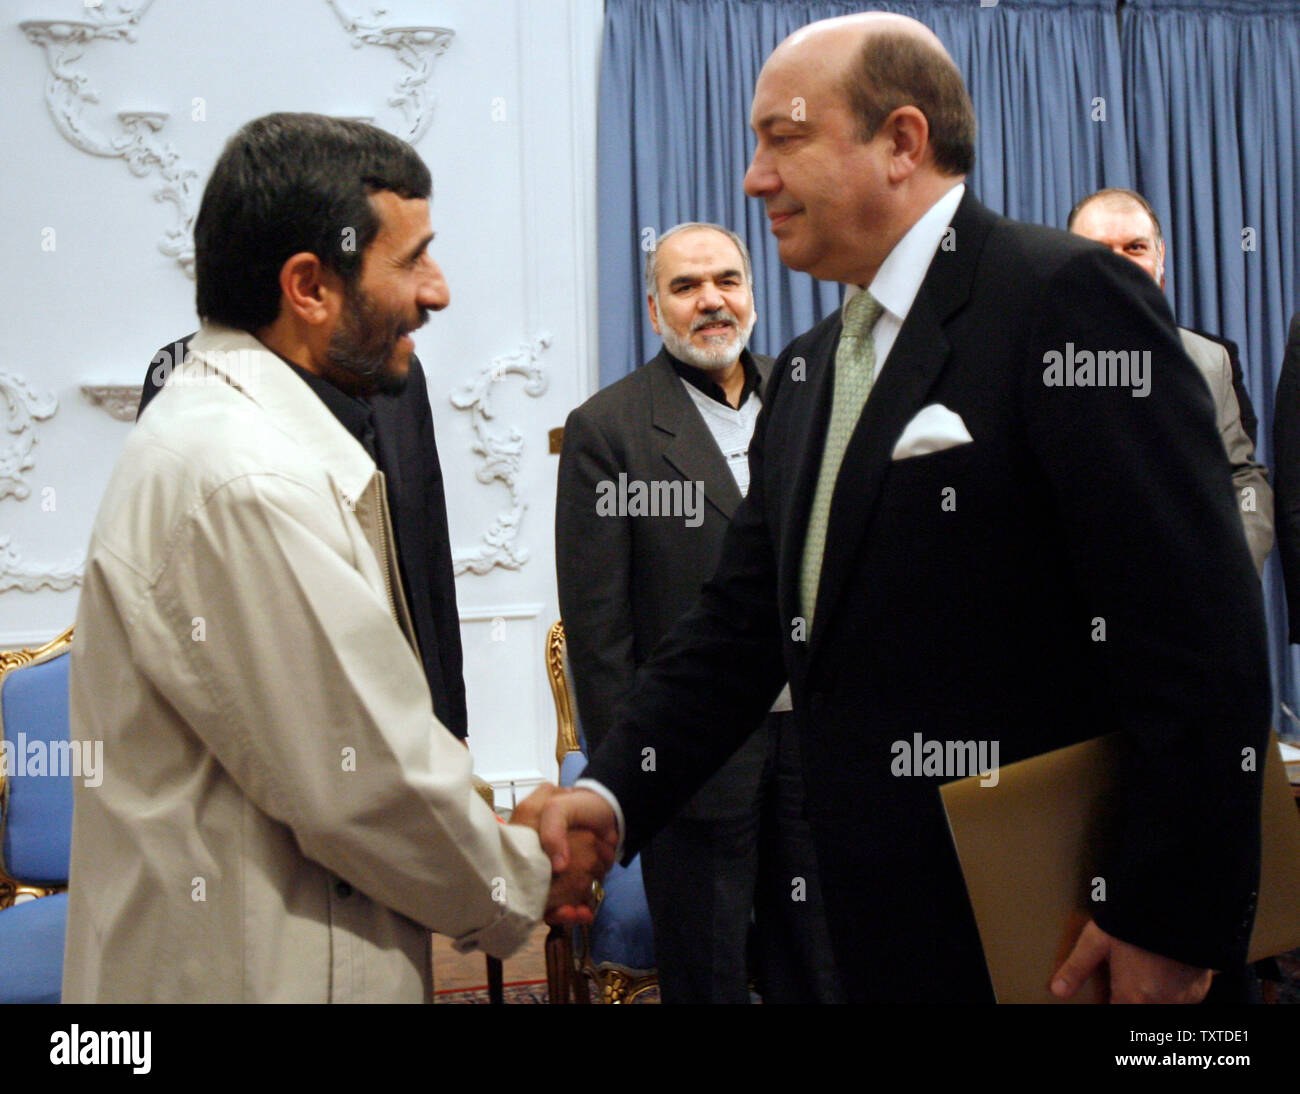 Le président iranien Mahmoud Ahmadinejad (L), serre la main avec le secrétaire du Conseil de sécurité russe Igor Ivanov (R) tandis que négociateur en chef du nucléaire iranien Ali Larijani (centre arrière) montres sur, au cours d'une réunion au palais présidentiel à Téhéran le 28 janvier 2008. (UPI/Photo) Banque D'Images